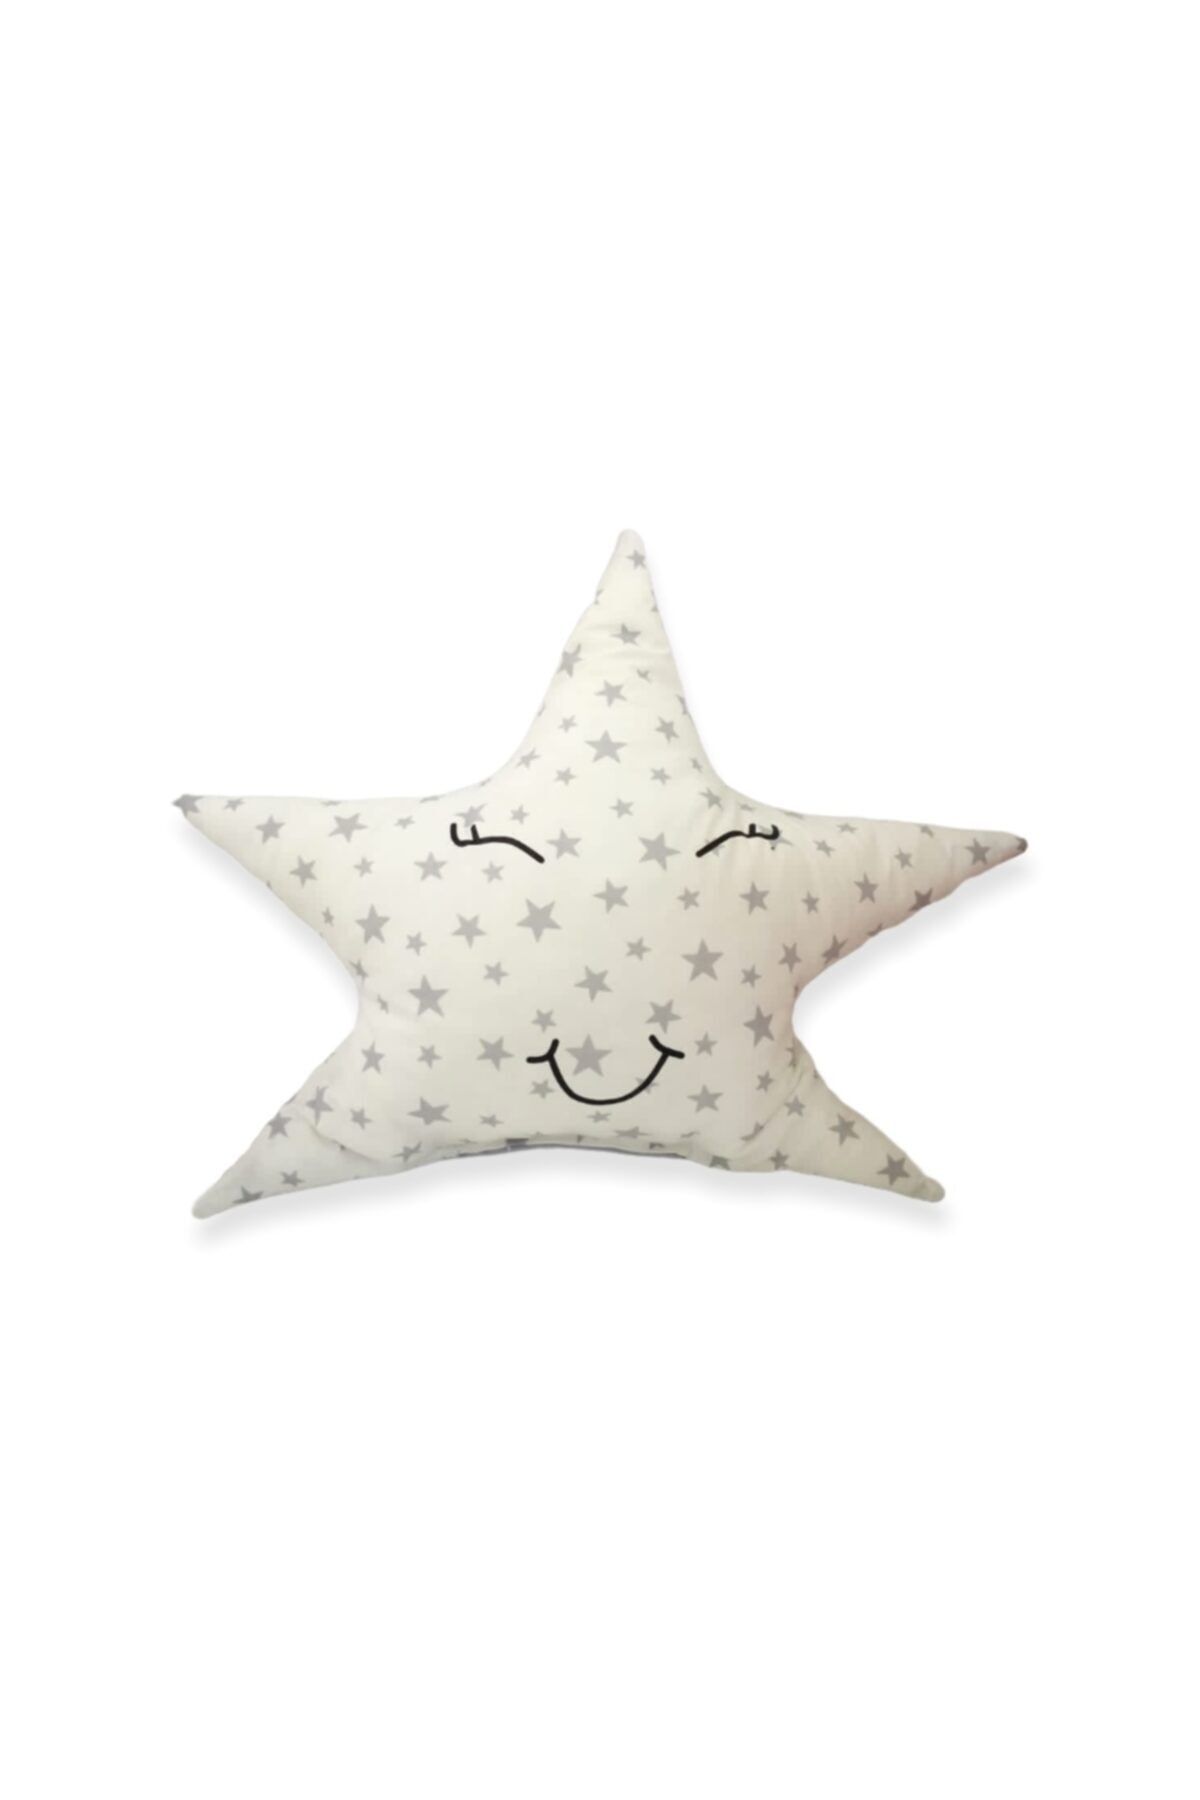 Bebek Özel Yıldız Model Yastık Uyku Arkadaşı Süs Yastık Gri Yıldızlı